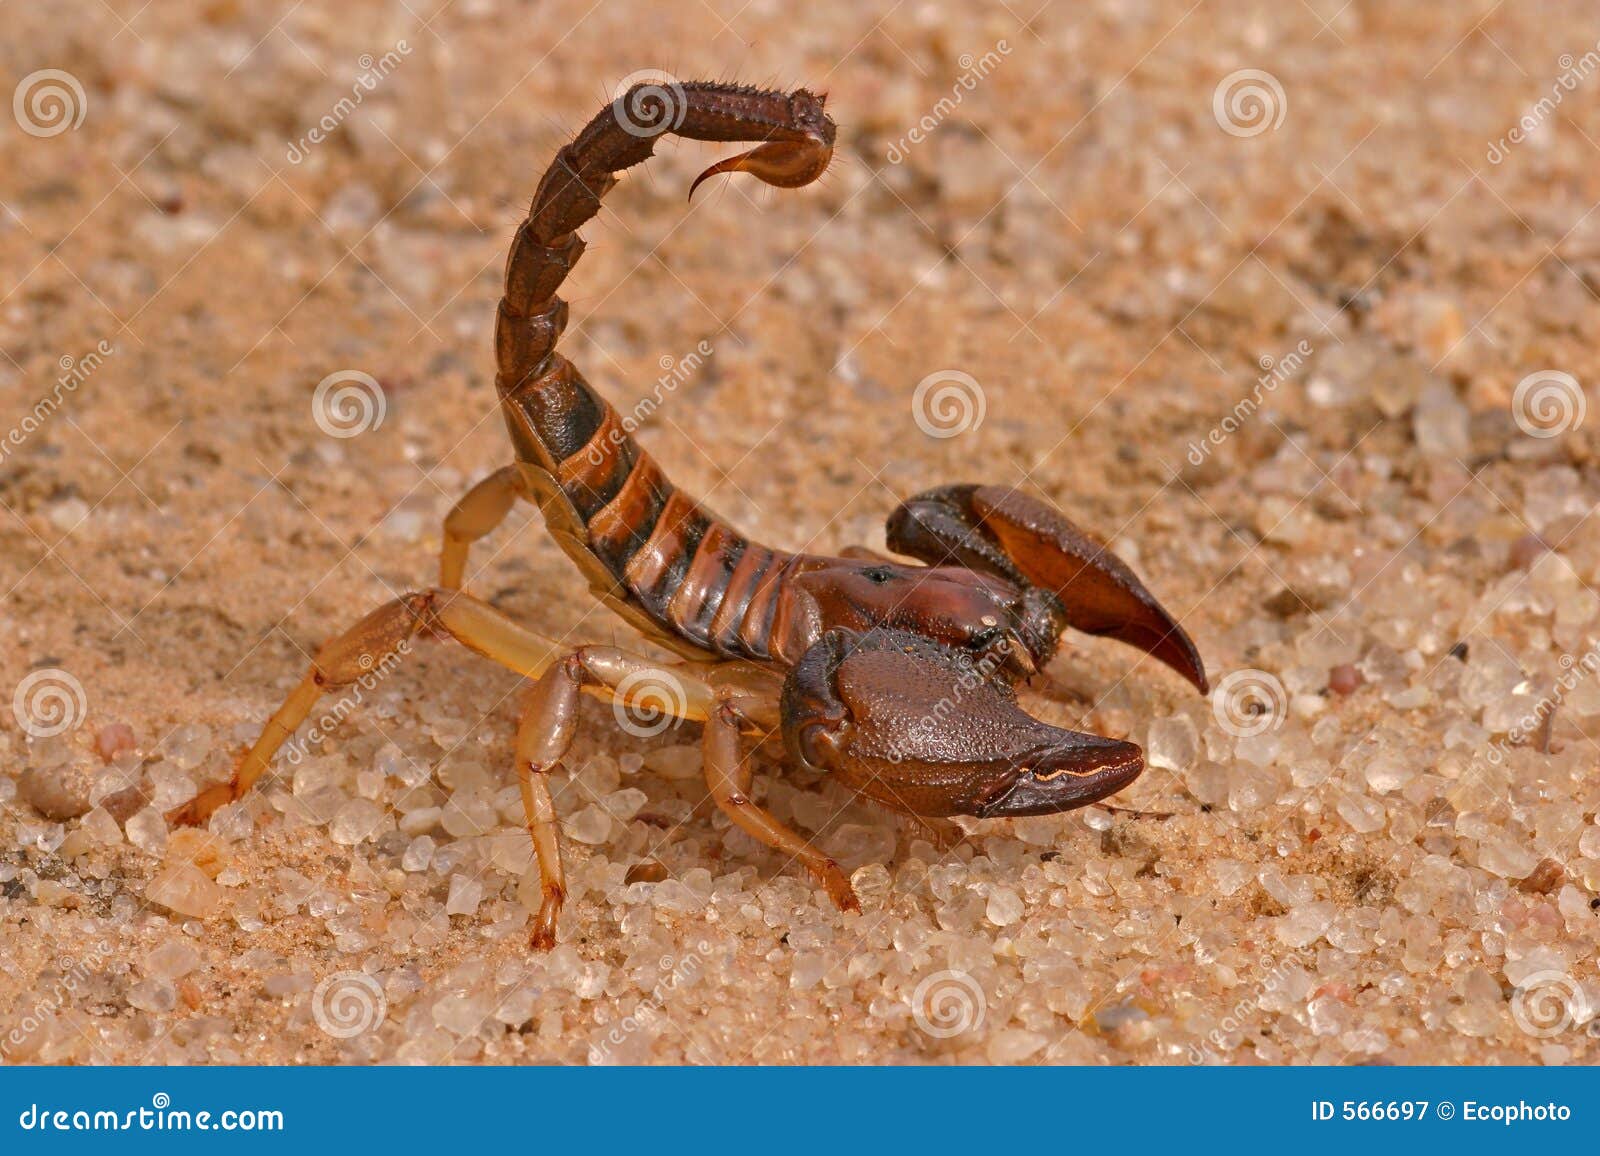 aggressive scorpion